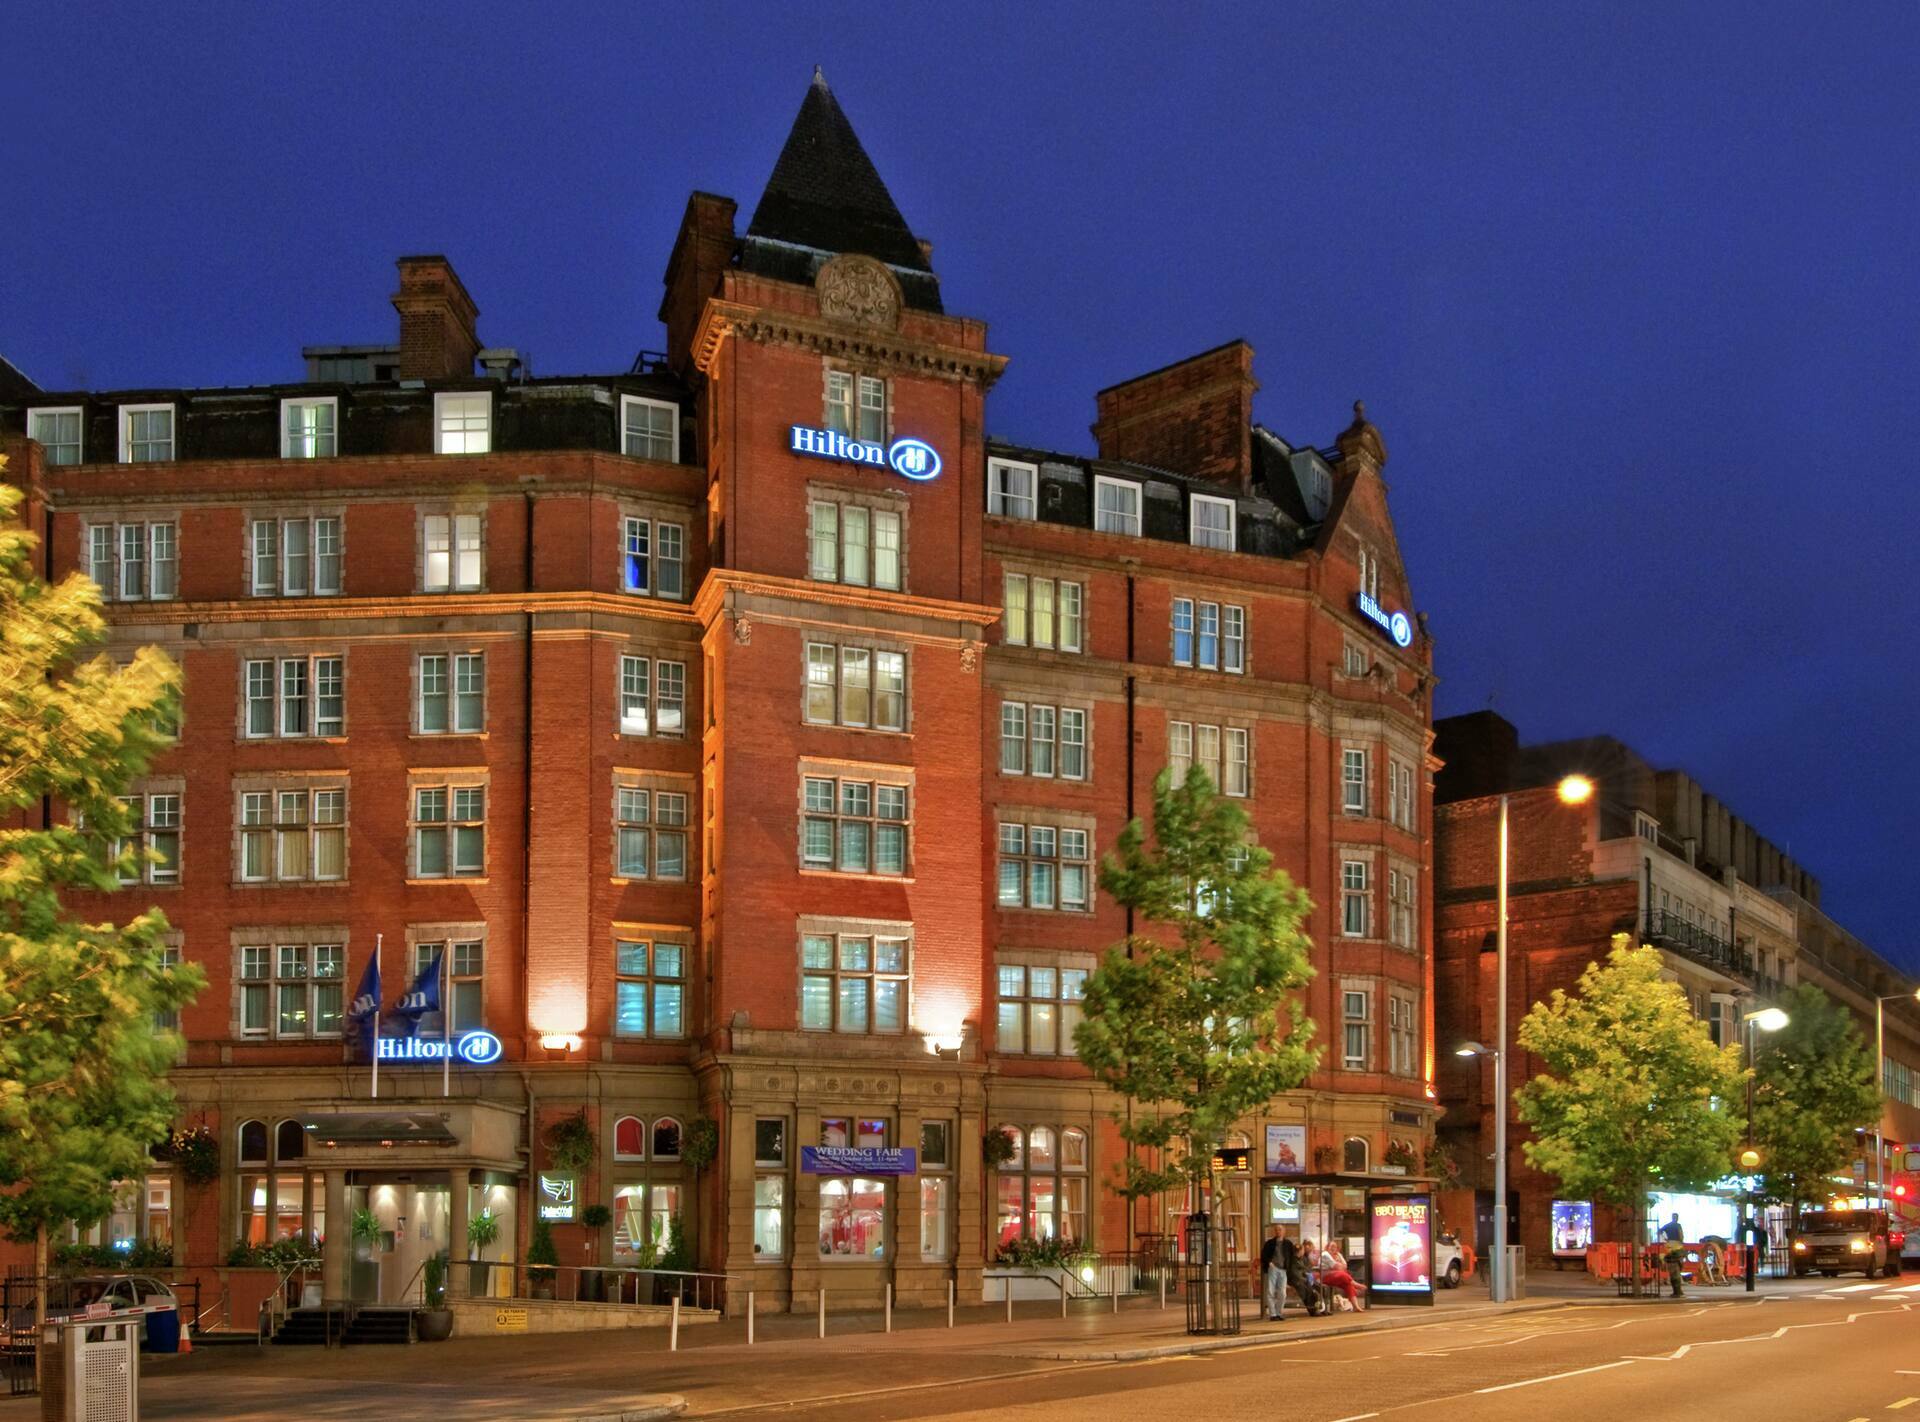 Photo of Hilton Nottingham, Nottingham, England, United Kingdom